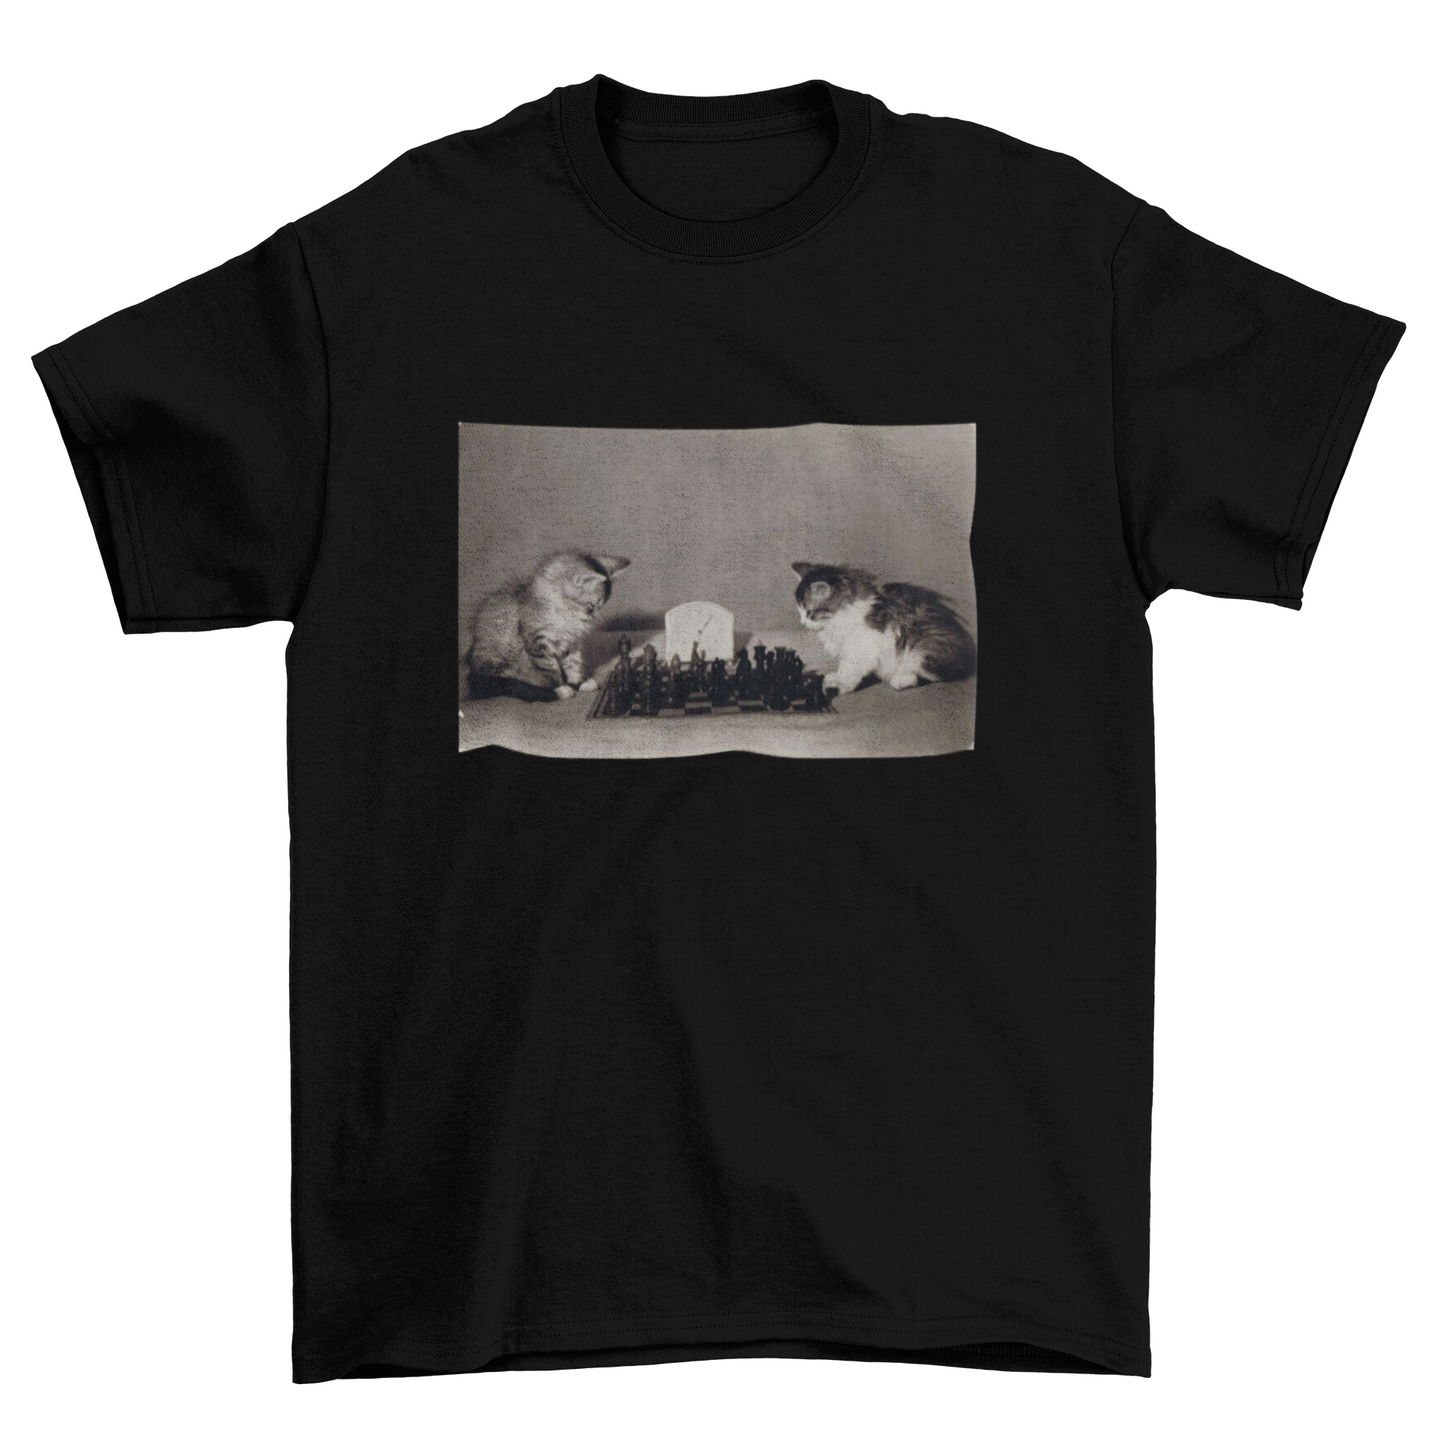 Chess Kittens T-Shirt